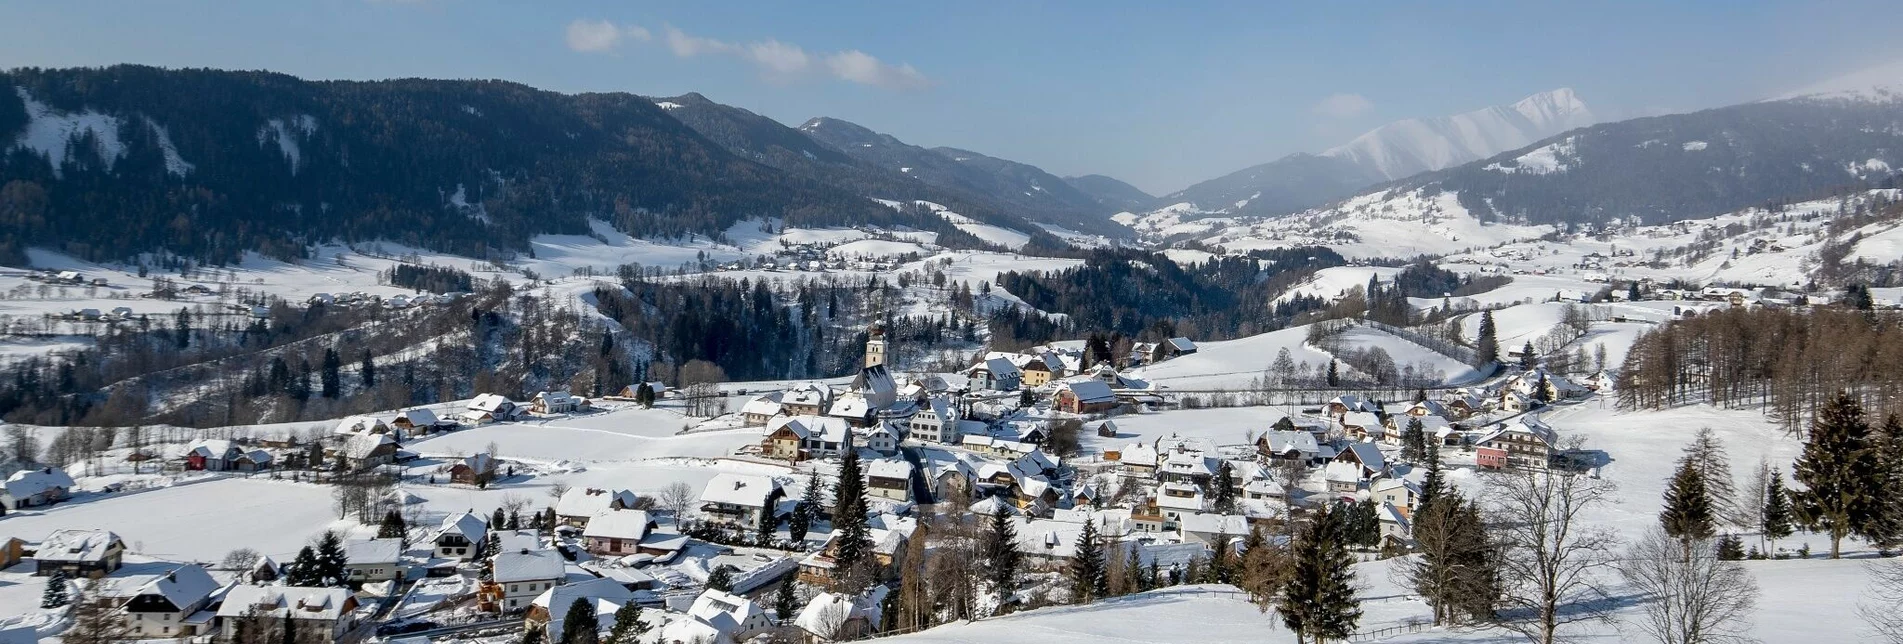 Winterwandern Winterwanderung ins Rantental - Touren-Impression #1 | © Tourismusverband Region Murau